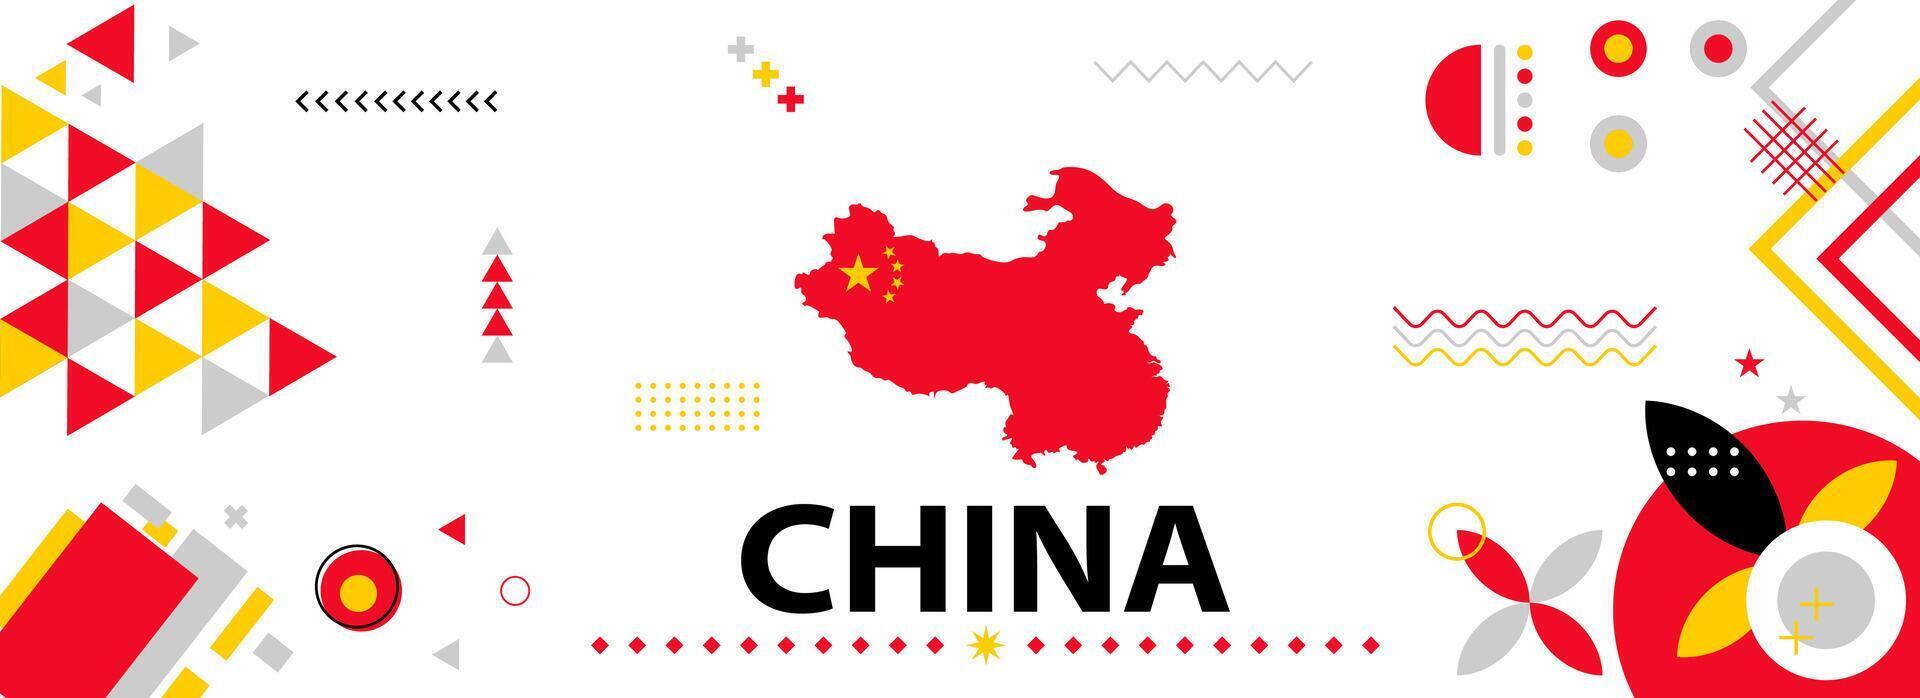 China nacional o independencia día bandera para país celebracion. bandera y mapa de China con moderno retro diseño con tiporgafia resumen geométrico iconos vector ilustración.